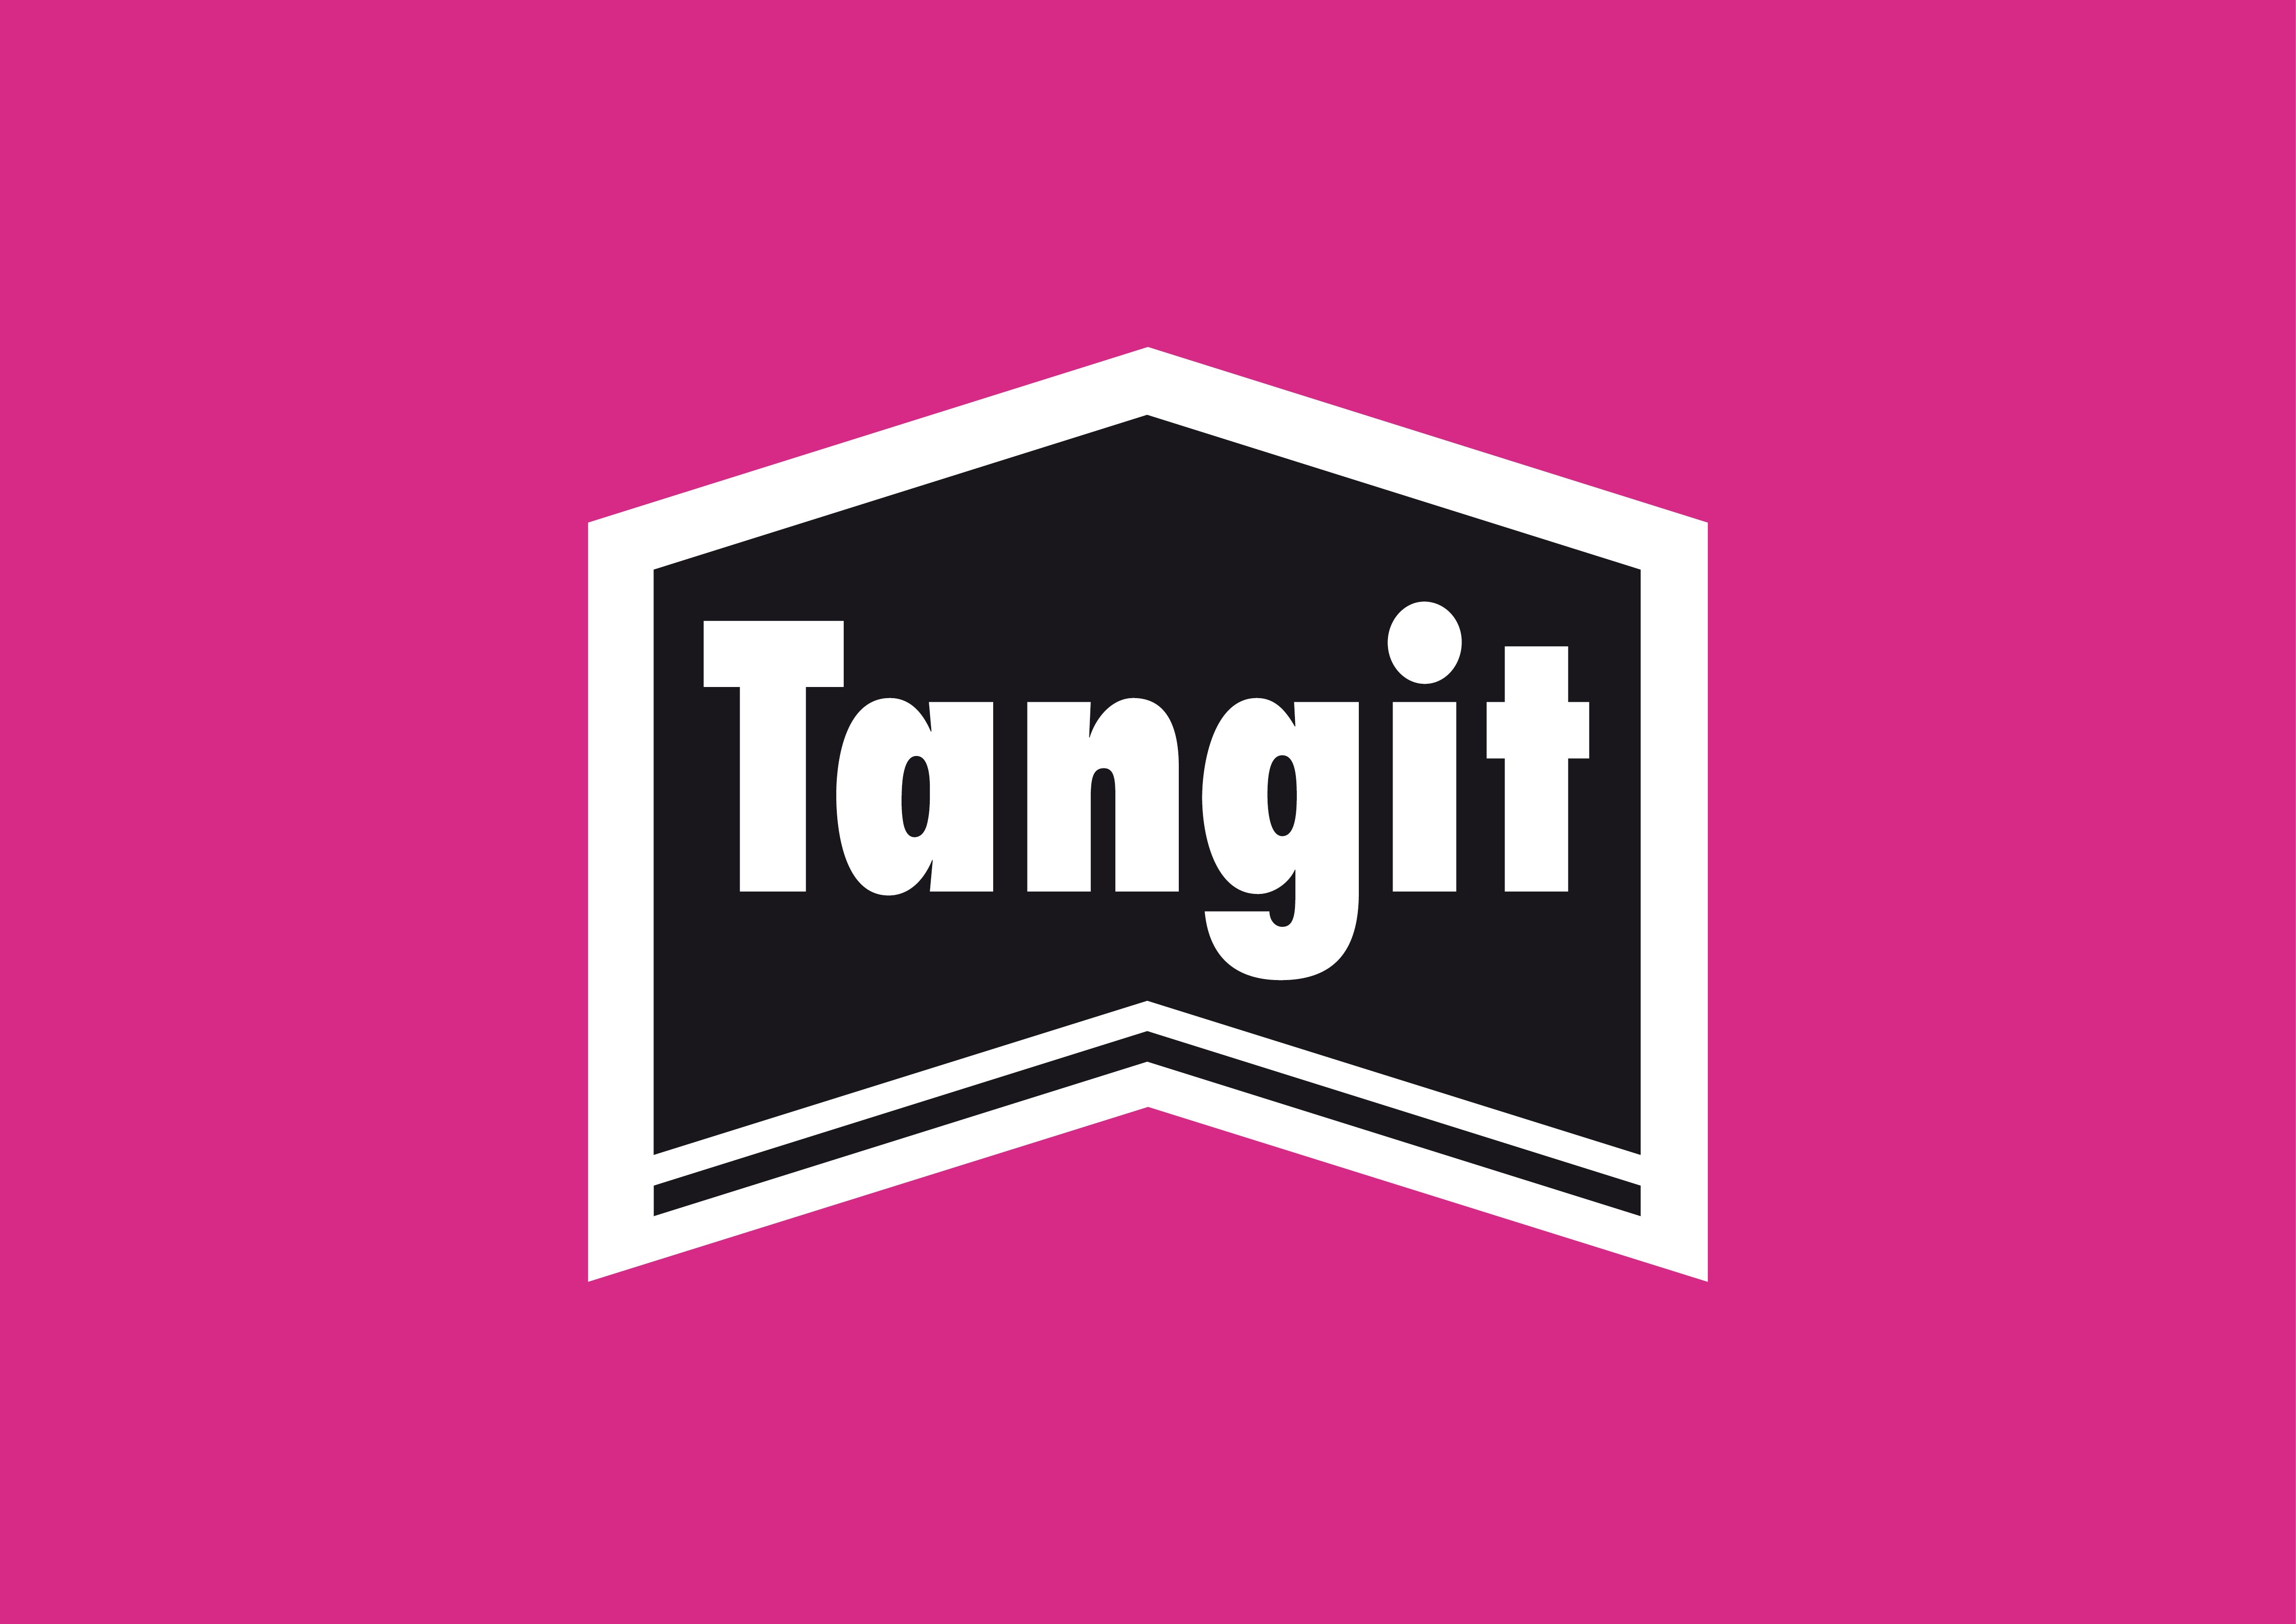 tangit